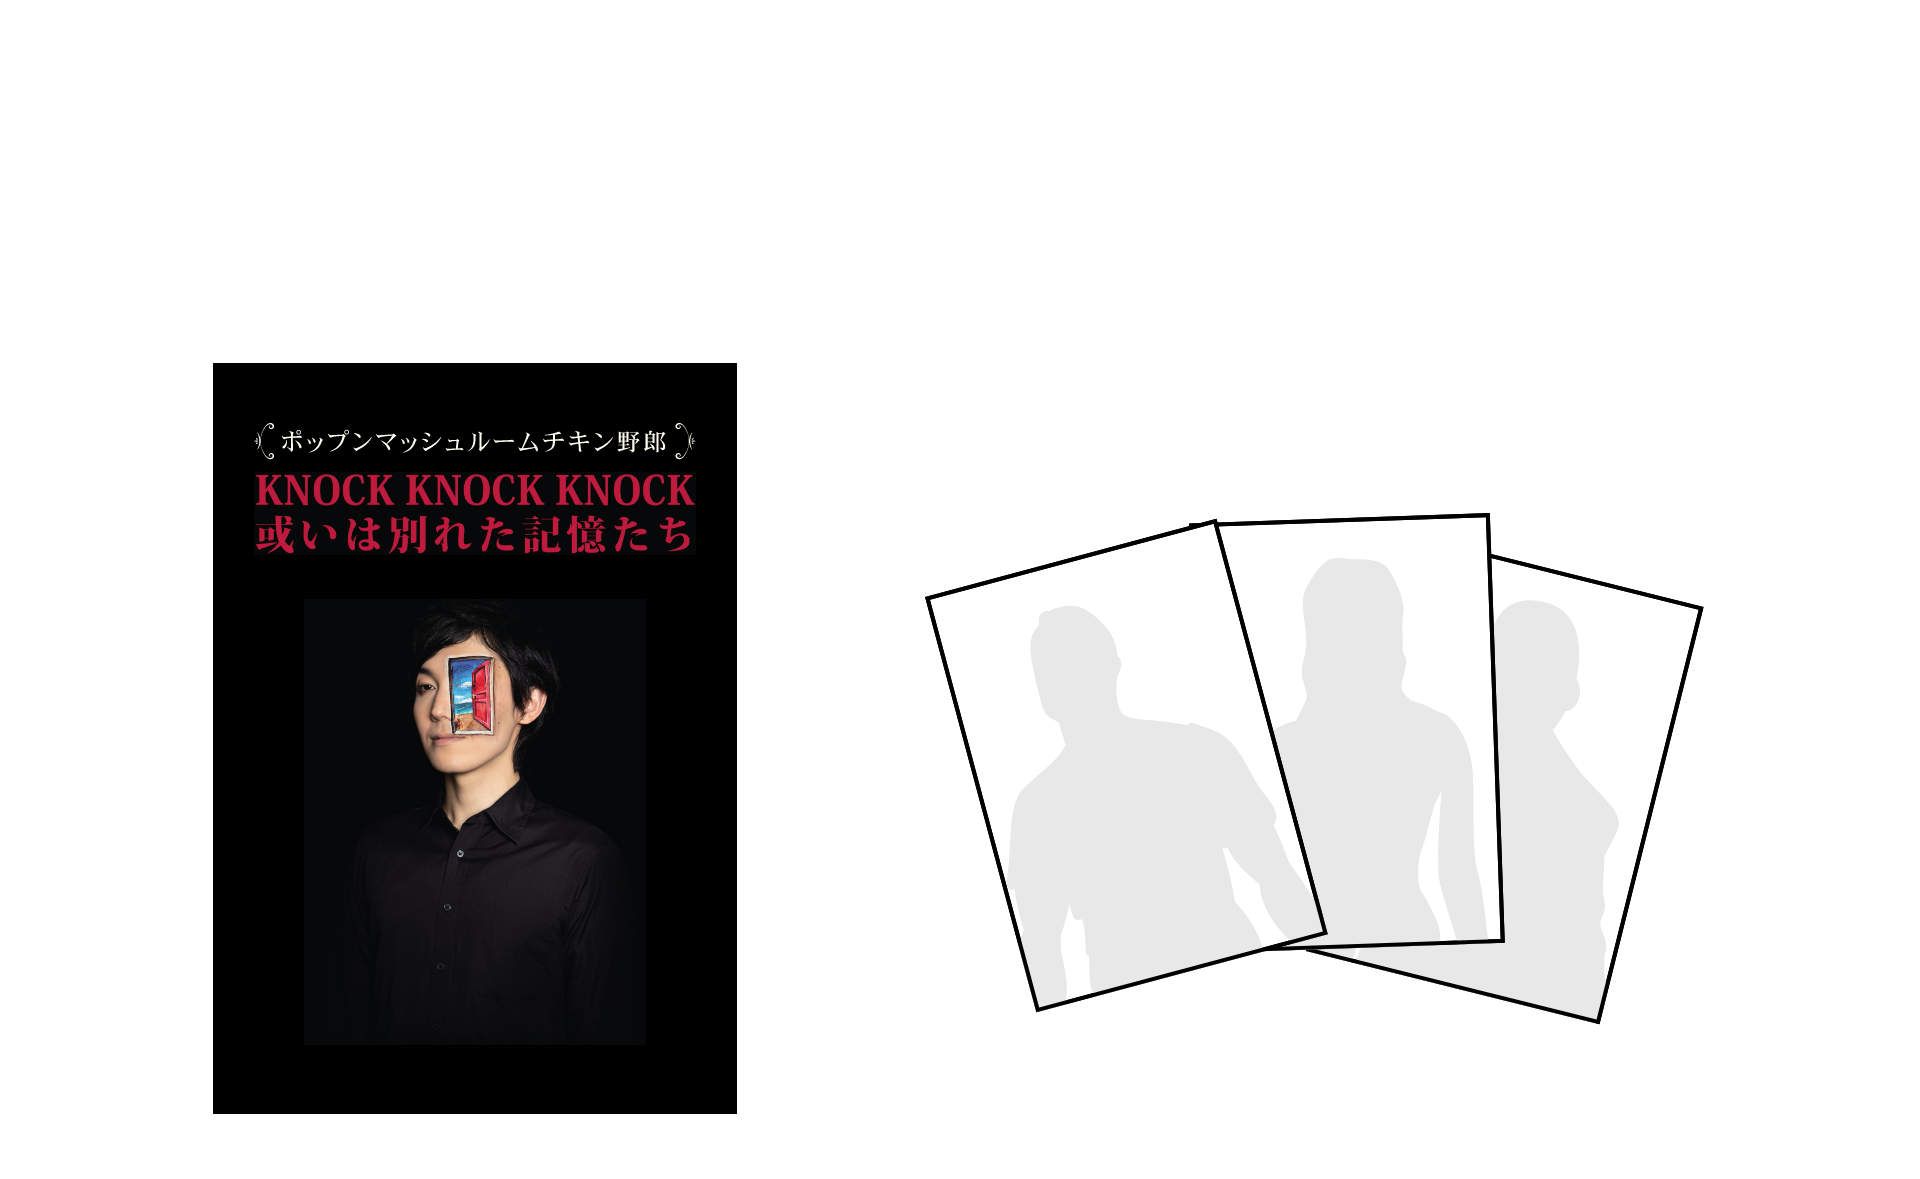 2.「KNOCK KNOCK KNOCK 或いは別れた記憶たち」DVD付き ウハウハブロマイド3枚